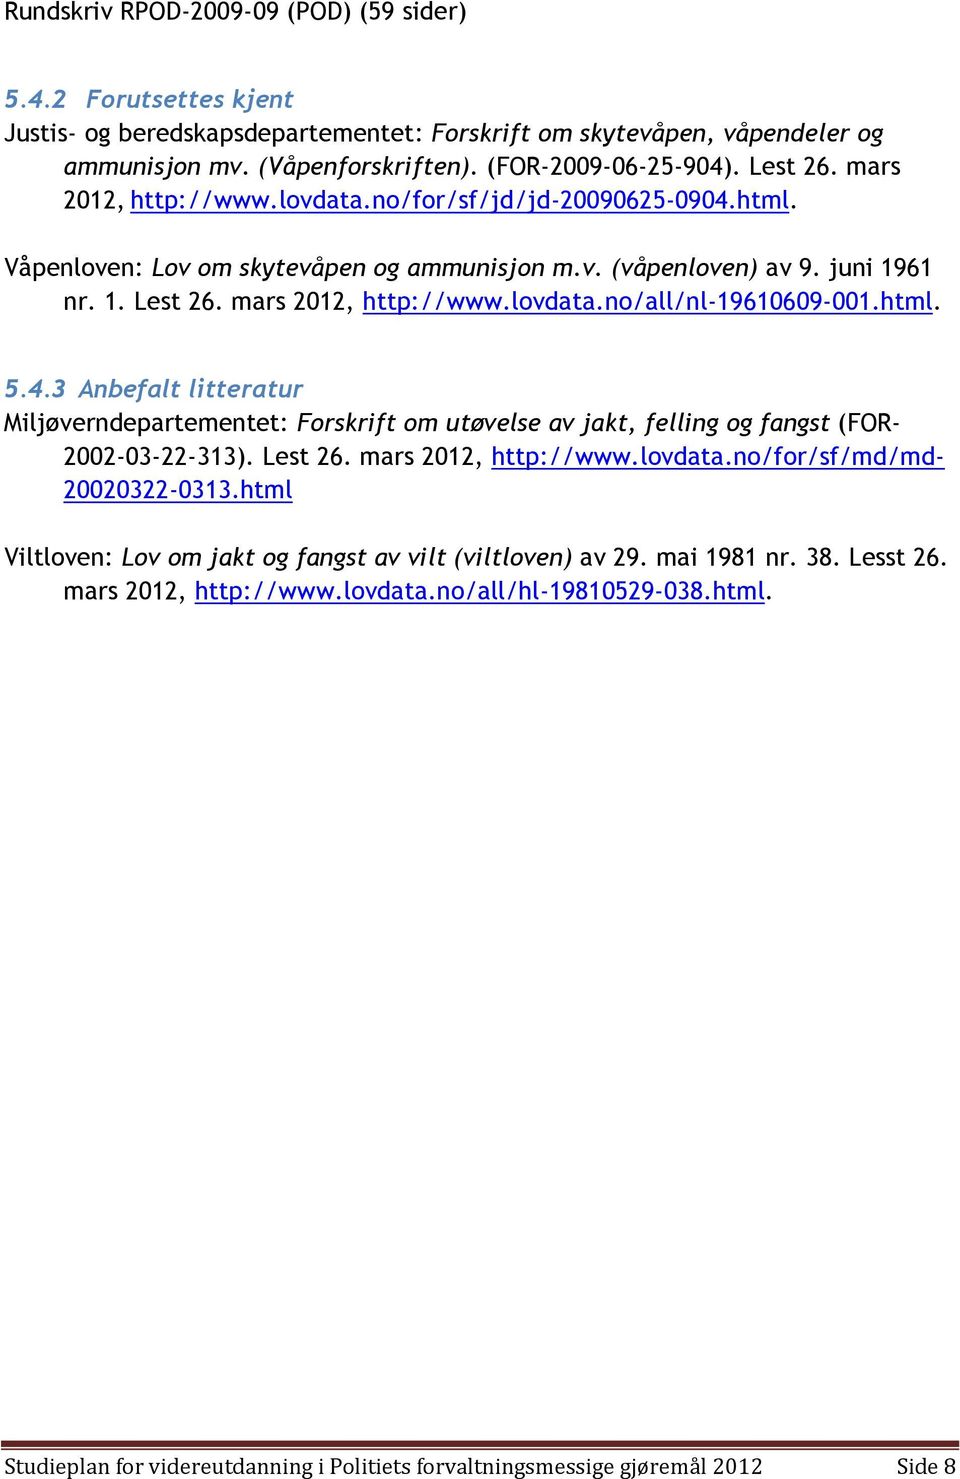 html. 5.4.3 Anbefalt litteratur Miljøverndepartementet: Forskrift om utøvelse av jakt, felling og fangst (FOR- 2002-03-22-313). Lest 26. mars 2012, http://www.lovdata.no/for/sf/md/md- 20020322-0313.